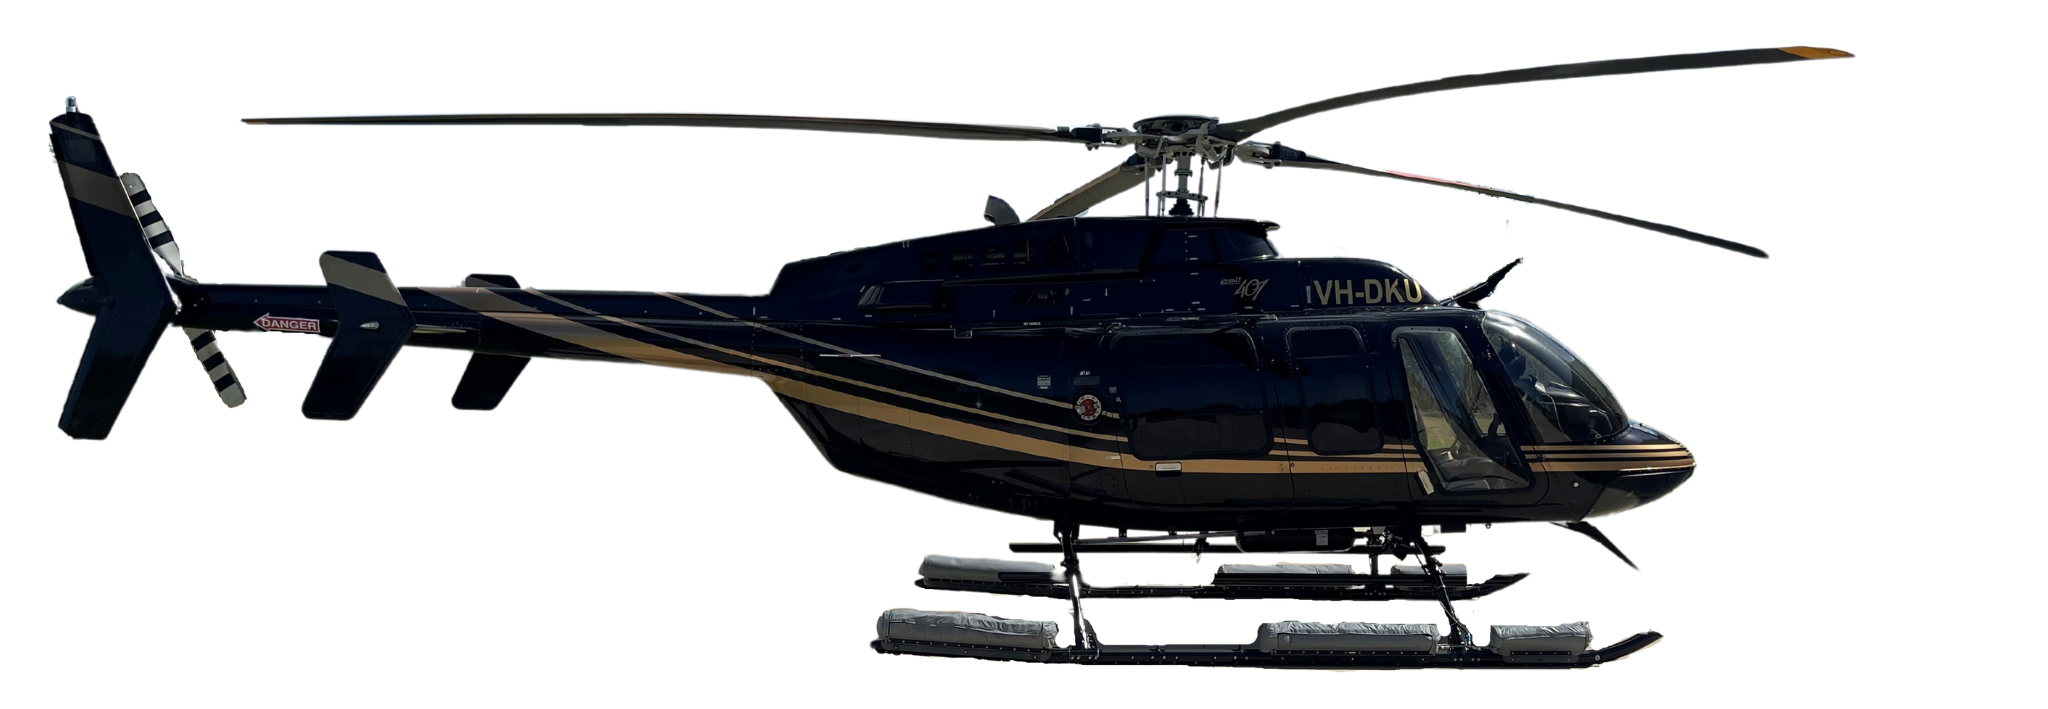 Bell 407 VH-DKU